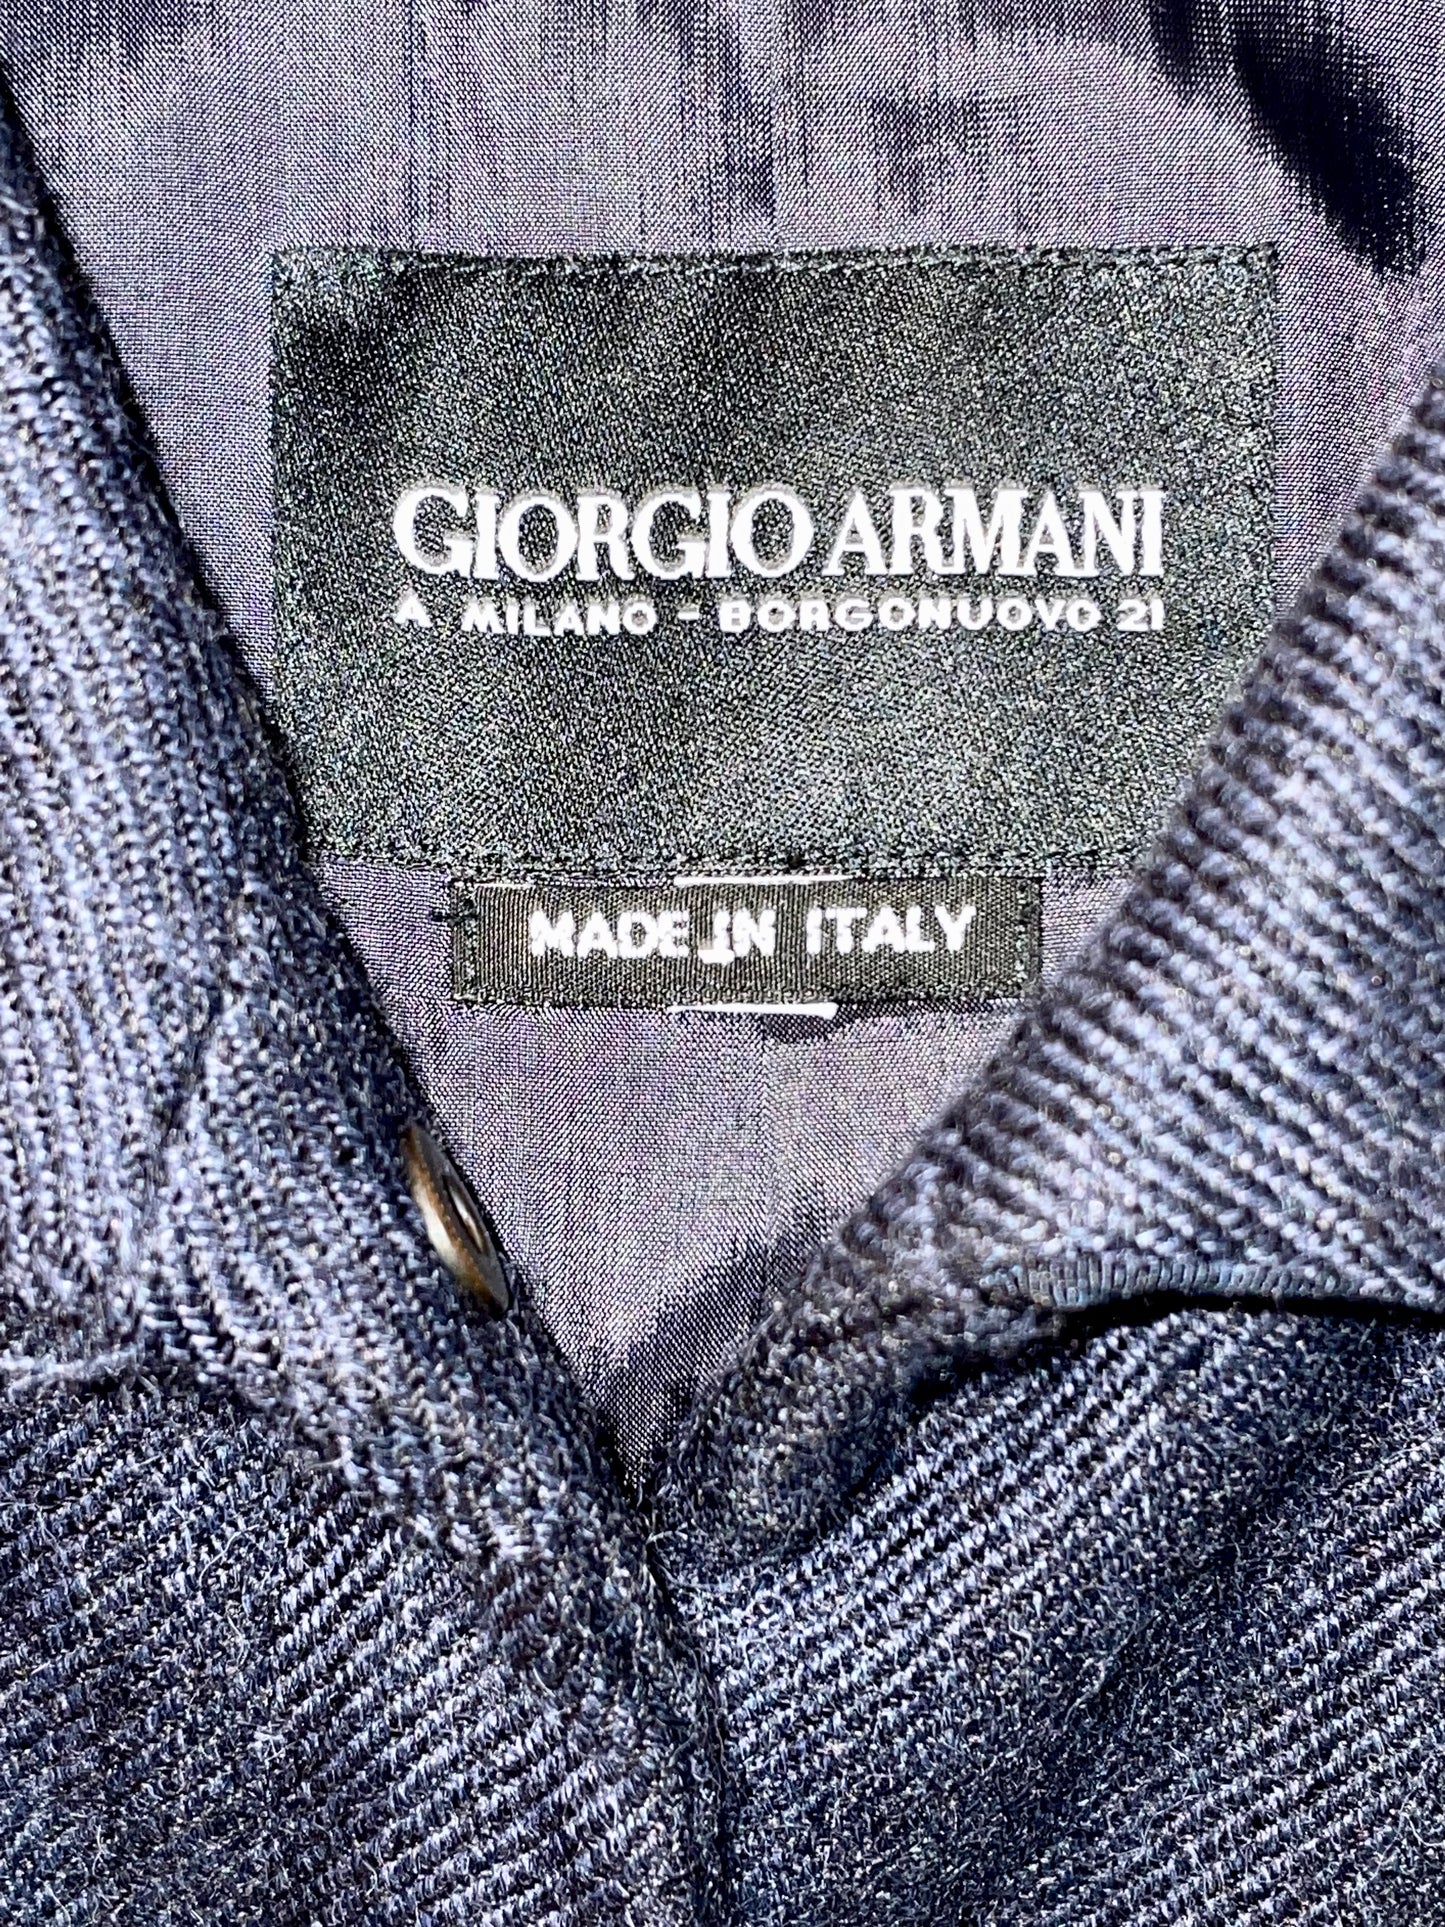 Giorgio Armani 90´s baby alpaca navy jacket